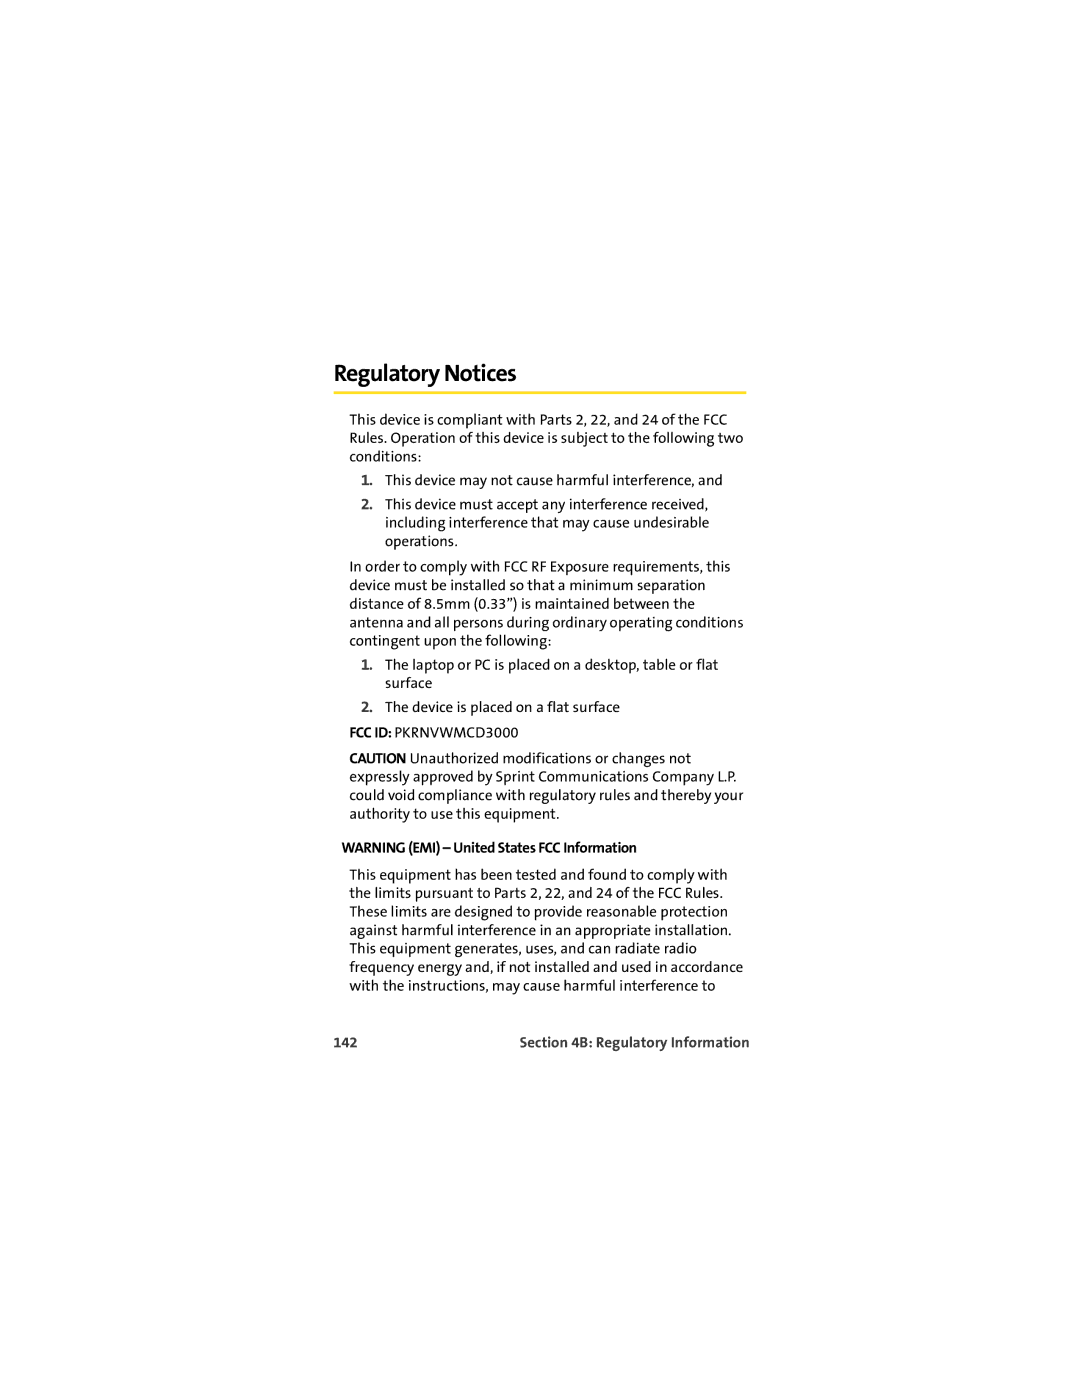 Sprint Nextel U727 manual Regulatory Notices, 142 